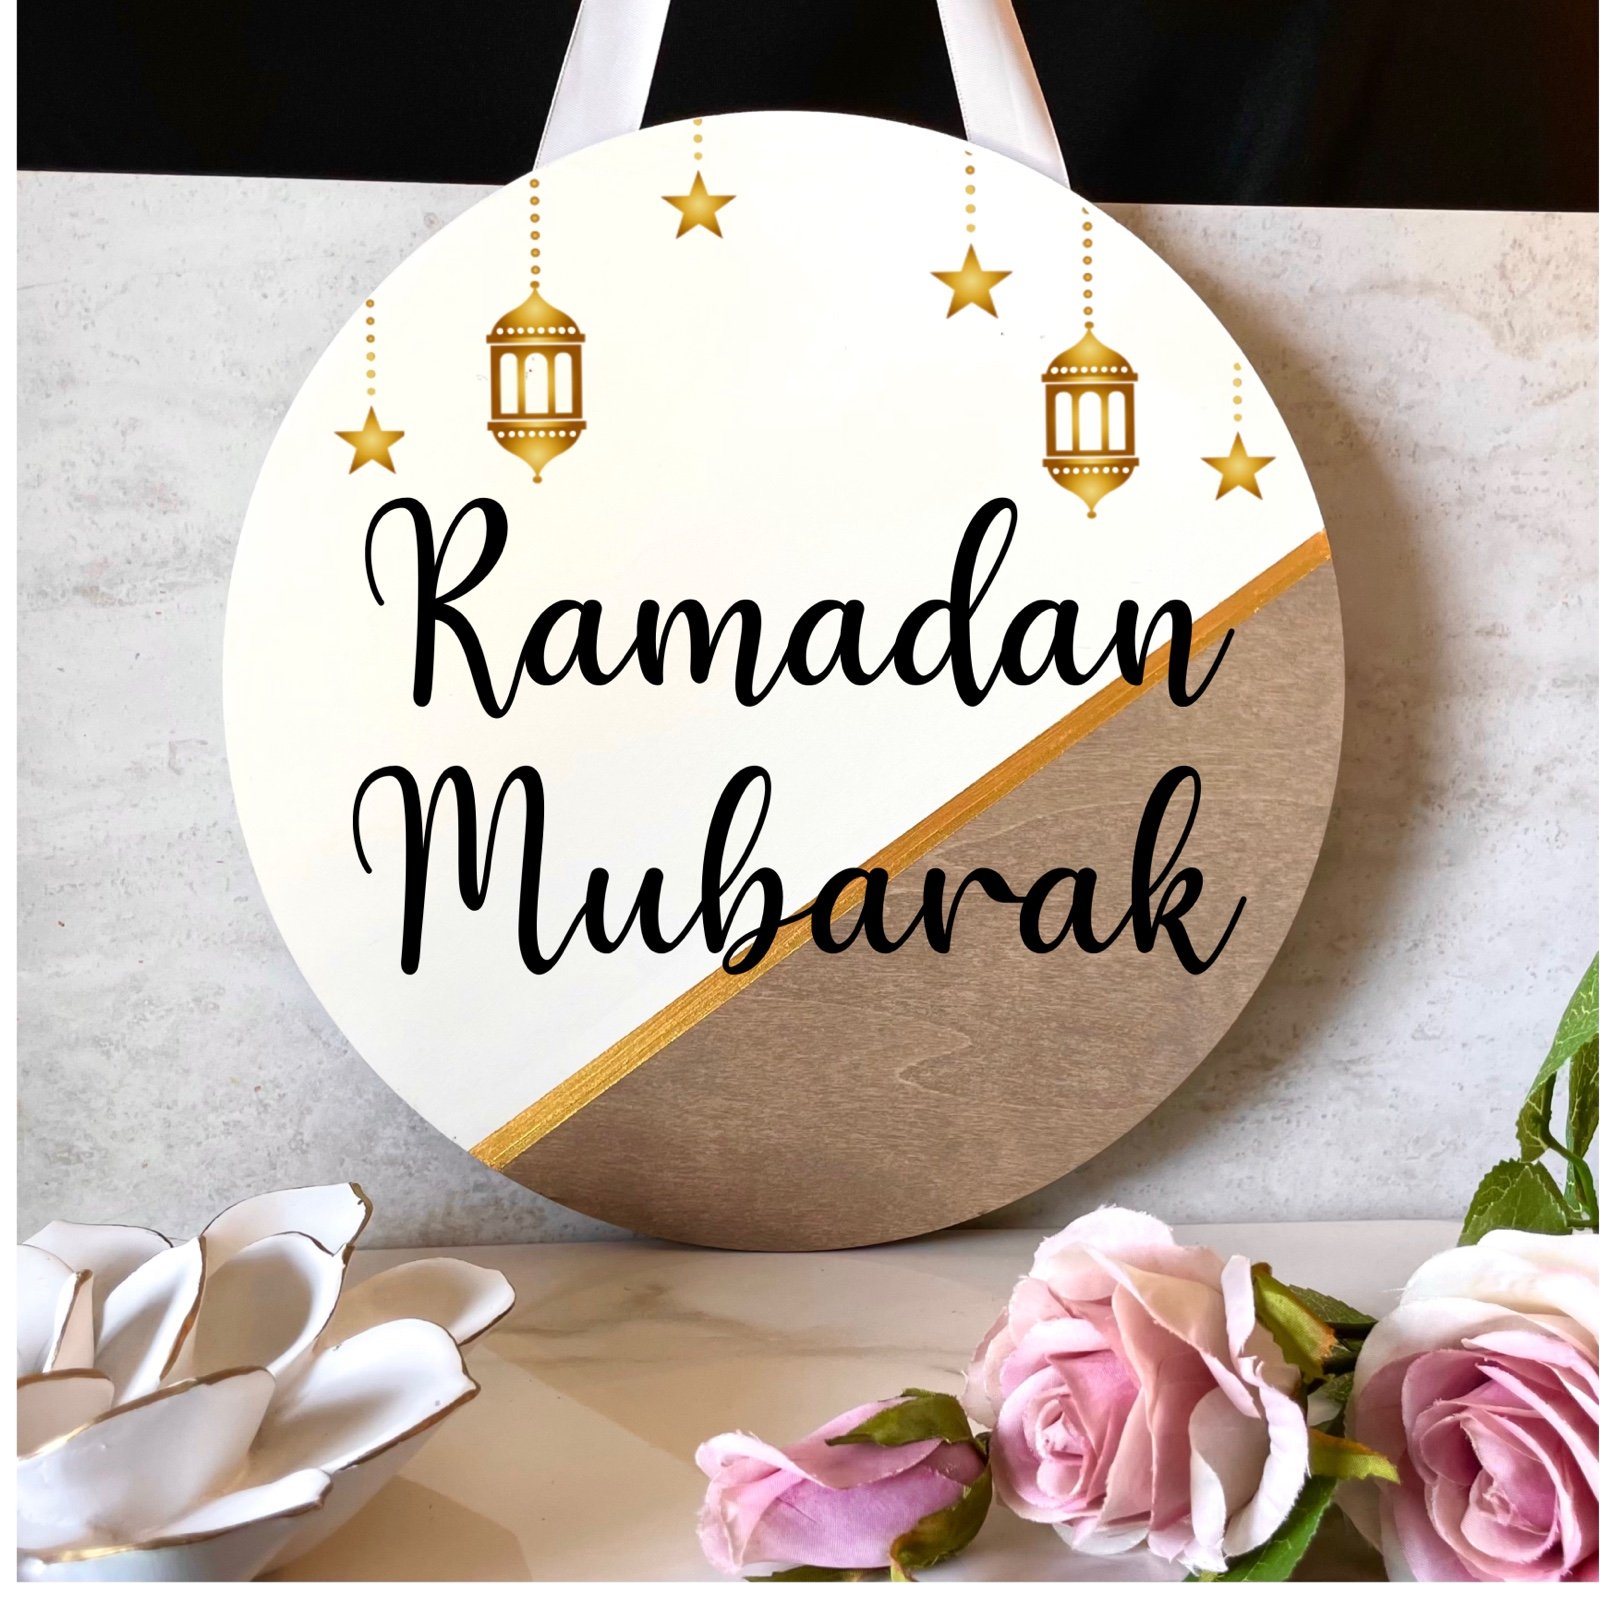 Ramadan decoration, Ramadan Kareem Ramadan Mubarak Ramadan door hanger sign 2jO7V3DAi